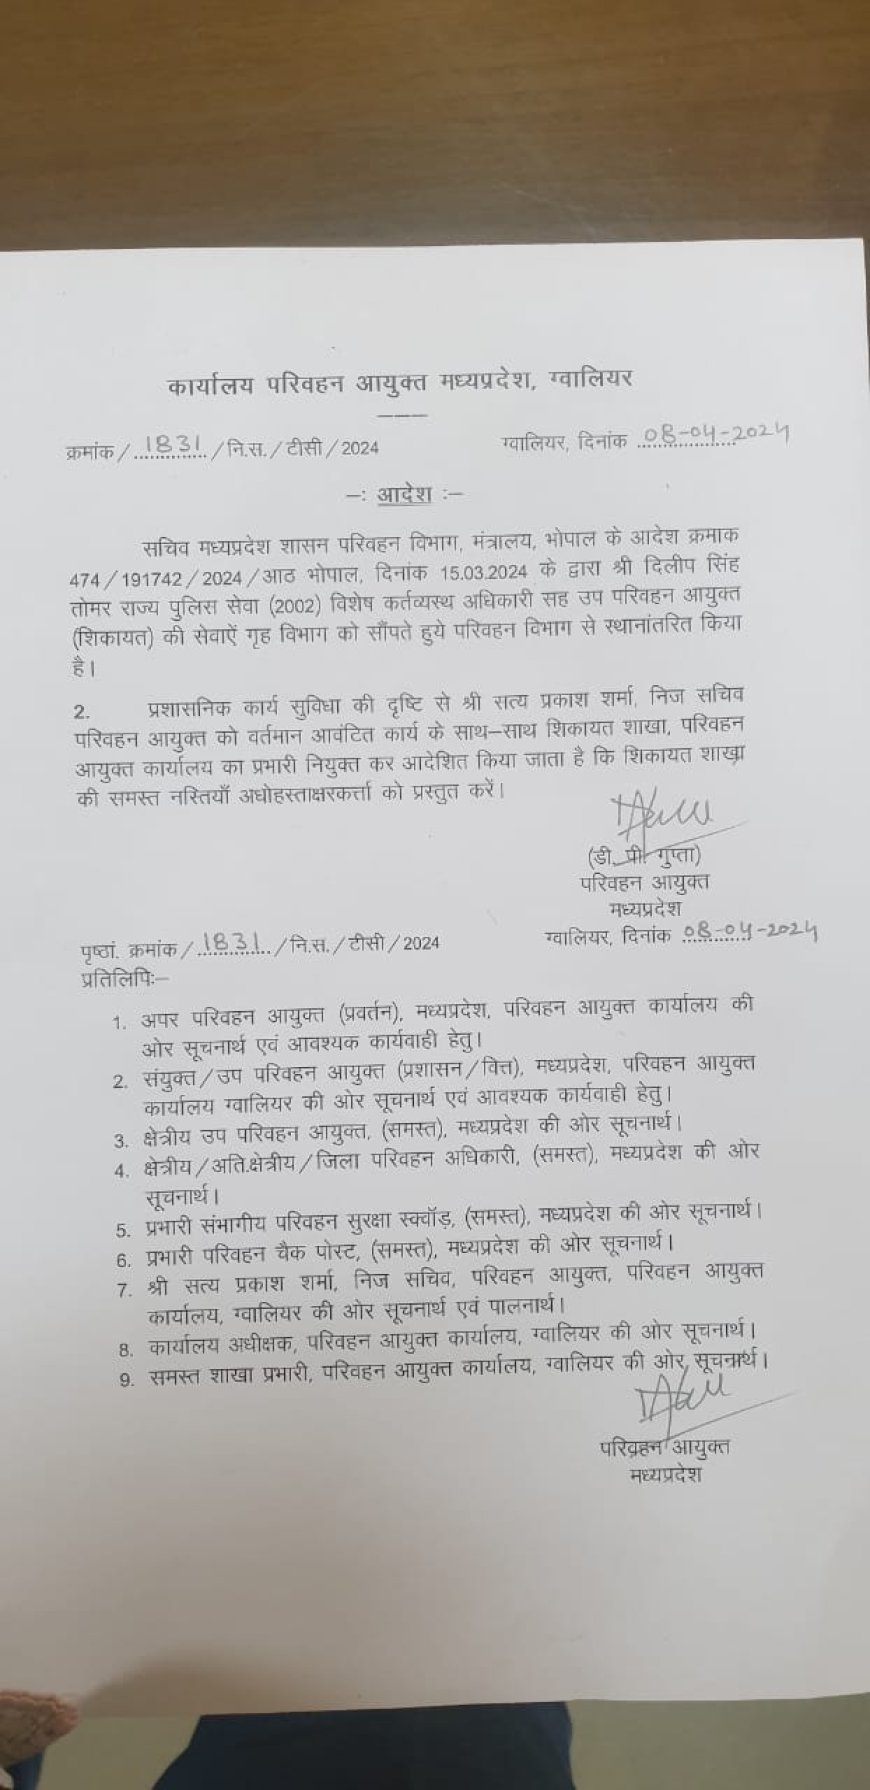 परिवहन आयुक्त डीपी गुप्ता ने आयुक्त मुख्यालय में उप परिवहन आयुक्त शिकायत की स्थानांतरण के बाद शिकायत शाखा का अतिरिक्त प्रभार अपने निज सचिव सत्य प्रकाश शर्मा को देने के आदेश जारी किए